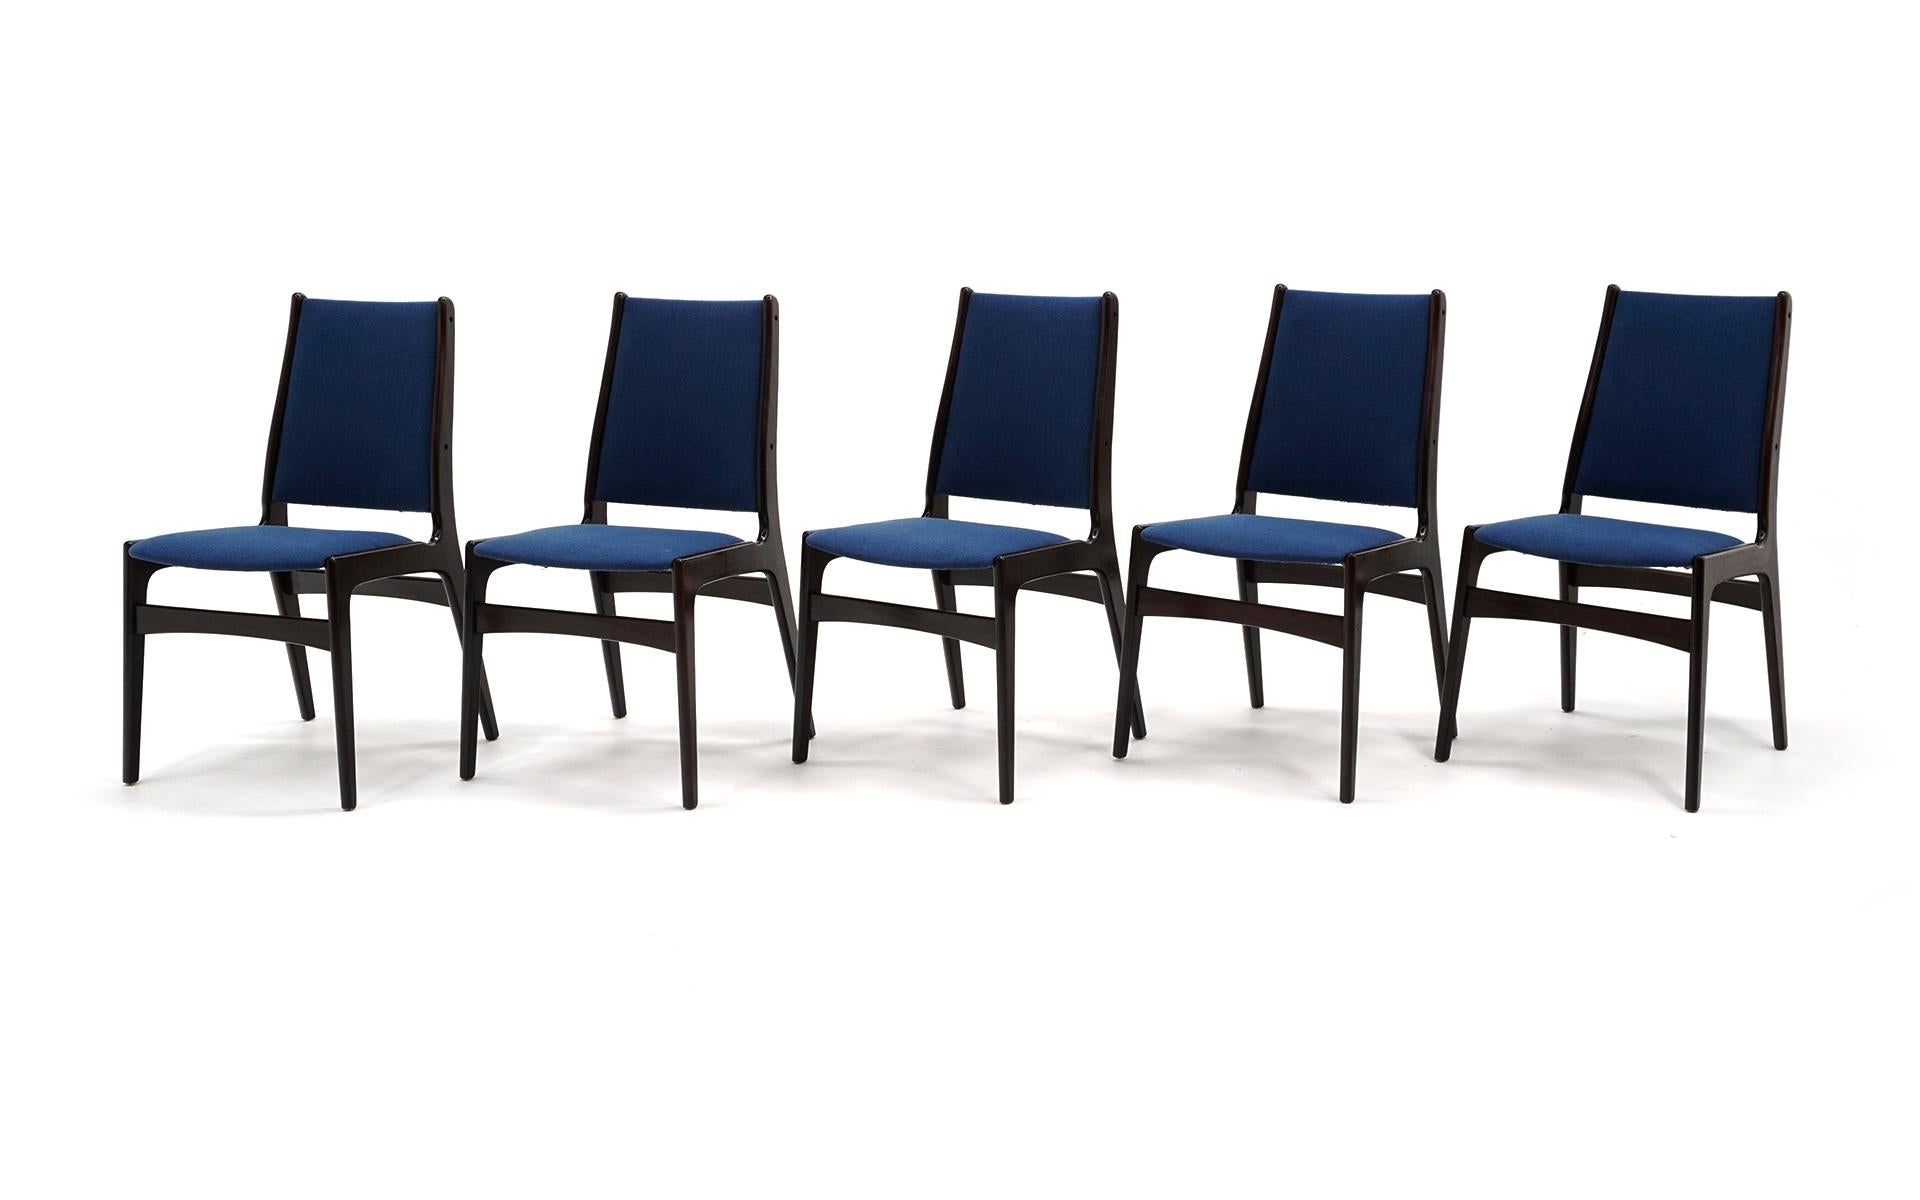 Ensemble de 10 chaises de salle à manger modernes danoises en palissandre brésilien et tapisserie bleue neuve. Une légère usure sous la forme de petites entailles et de bosses dans les cadres des chaises mais pas de distractions significatives et